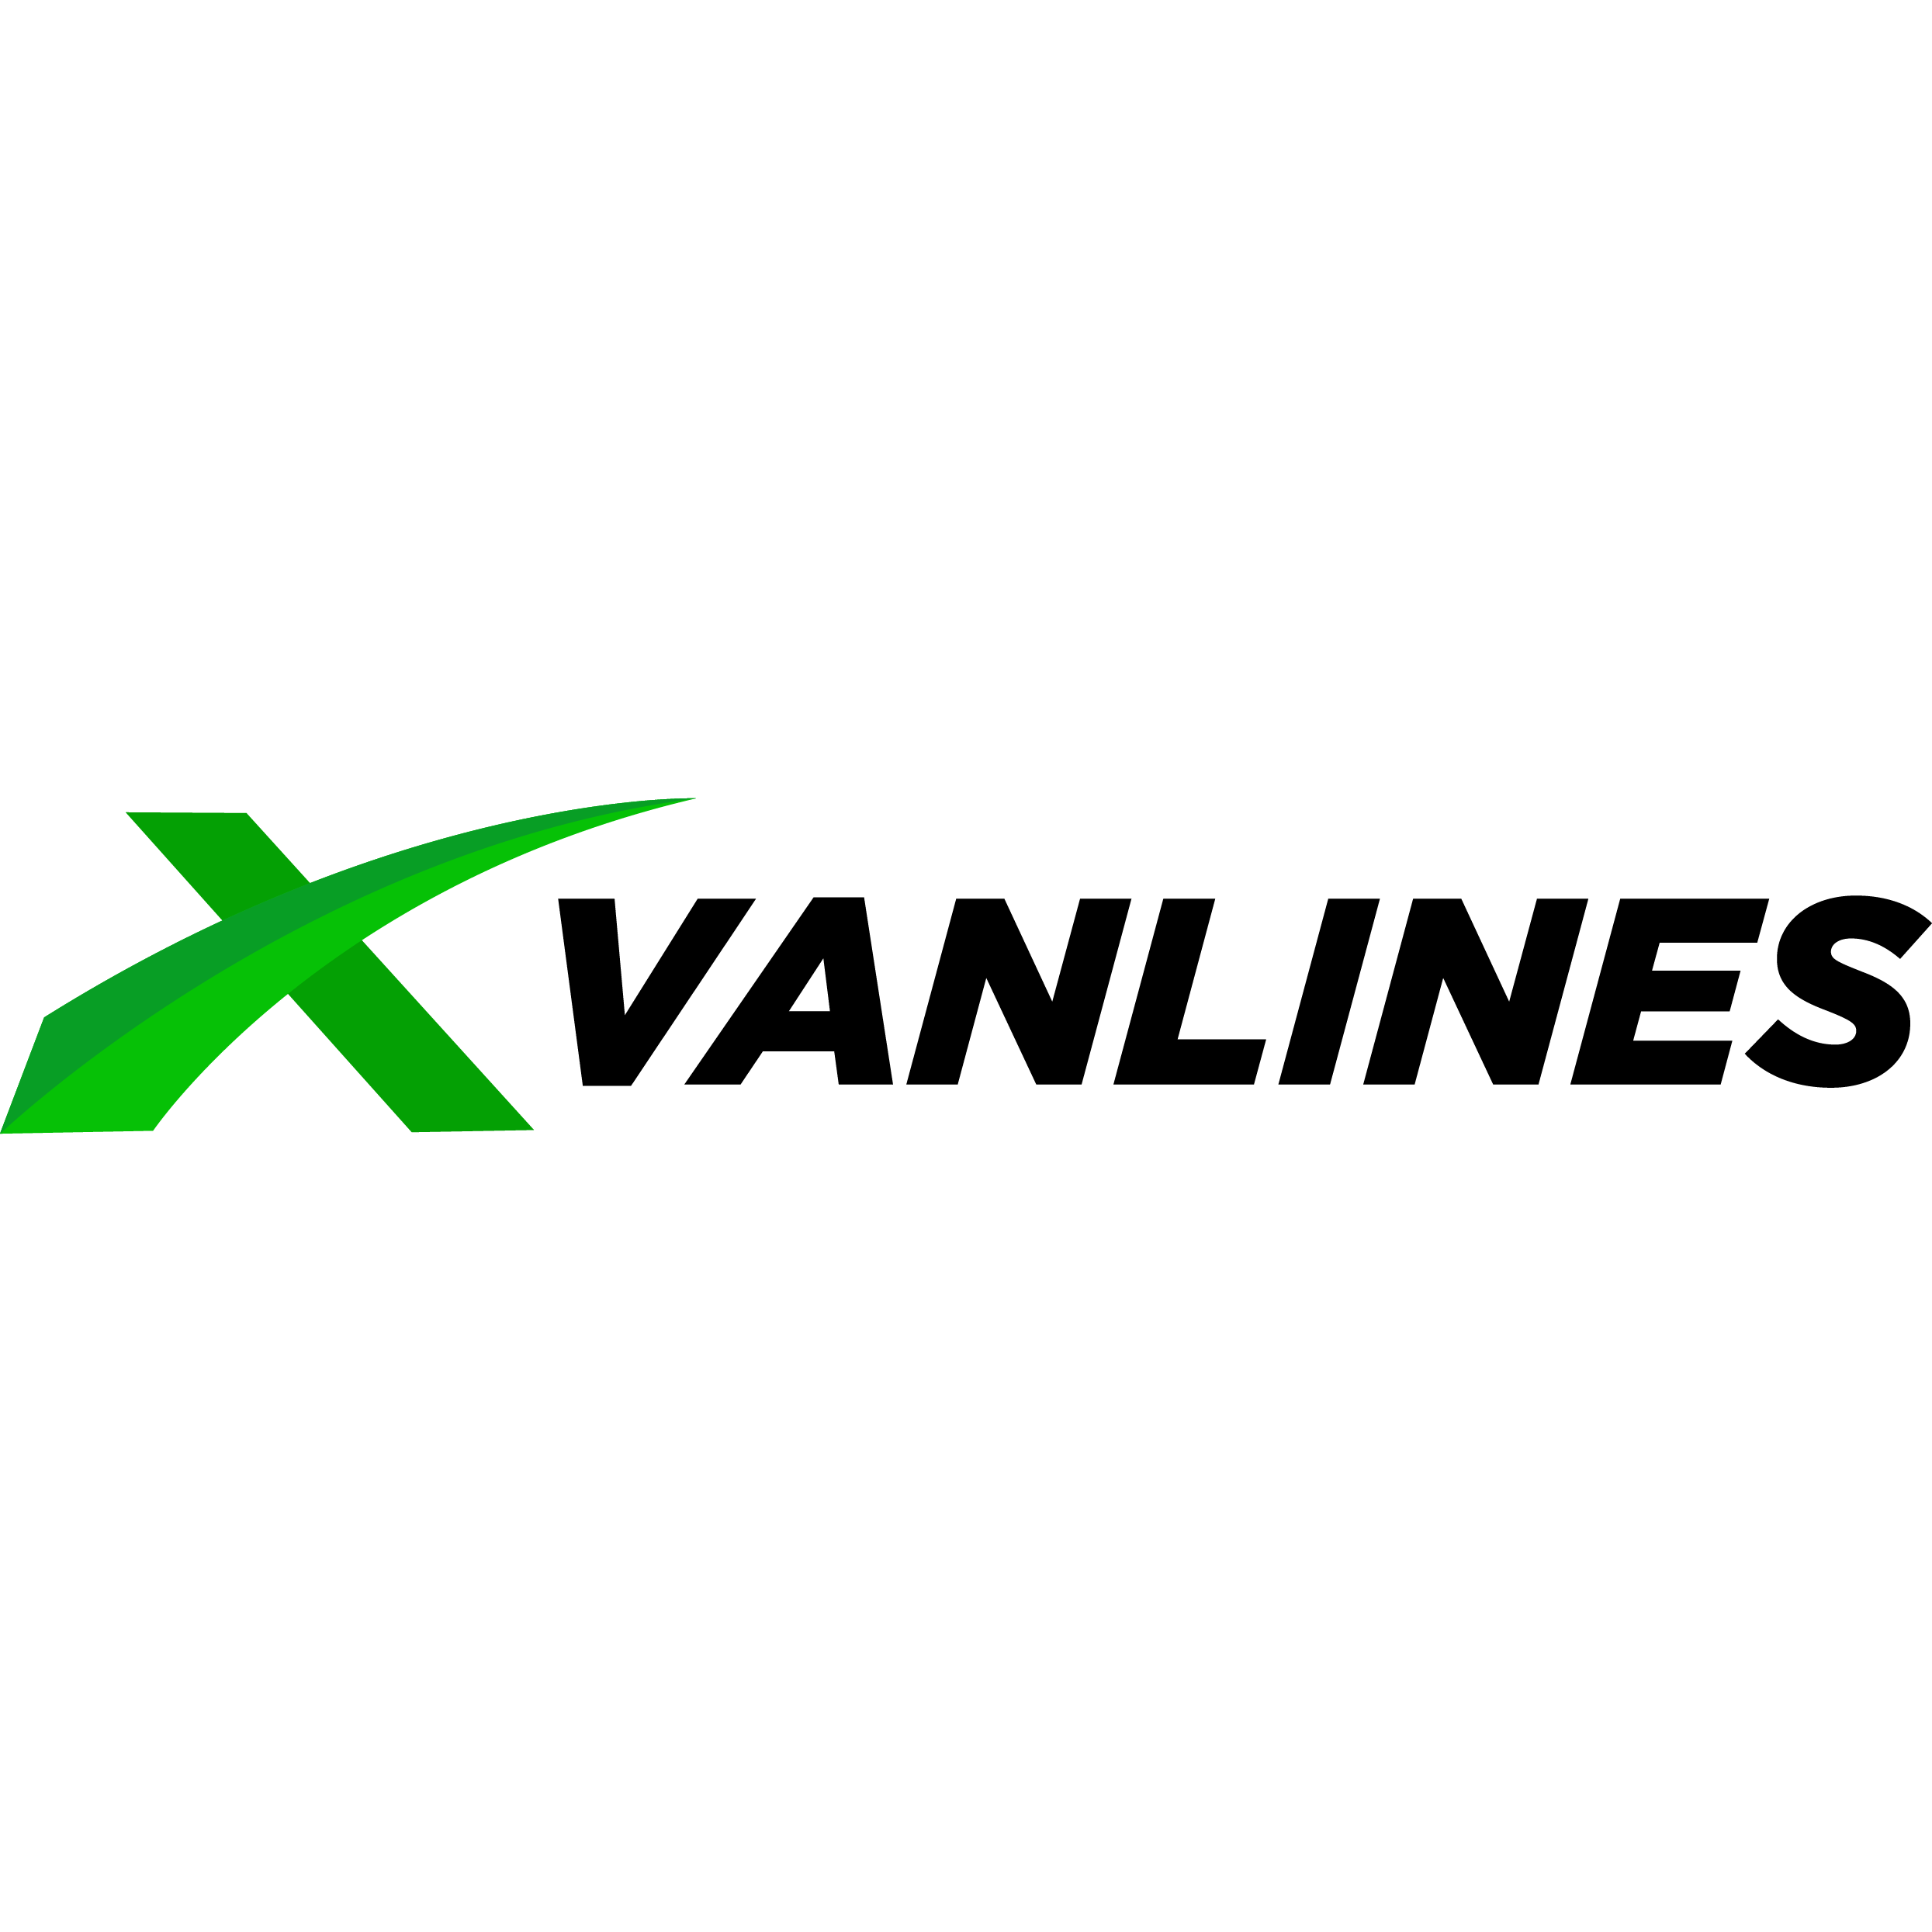 X Van Lines LLC - Dallas, TX 75247 - (877)306-3555 | ShowMeLocal.com